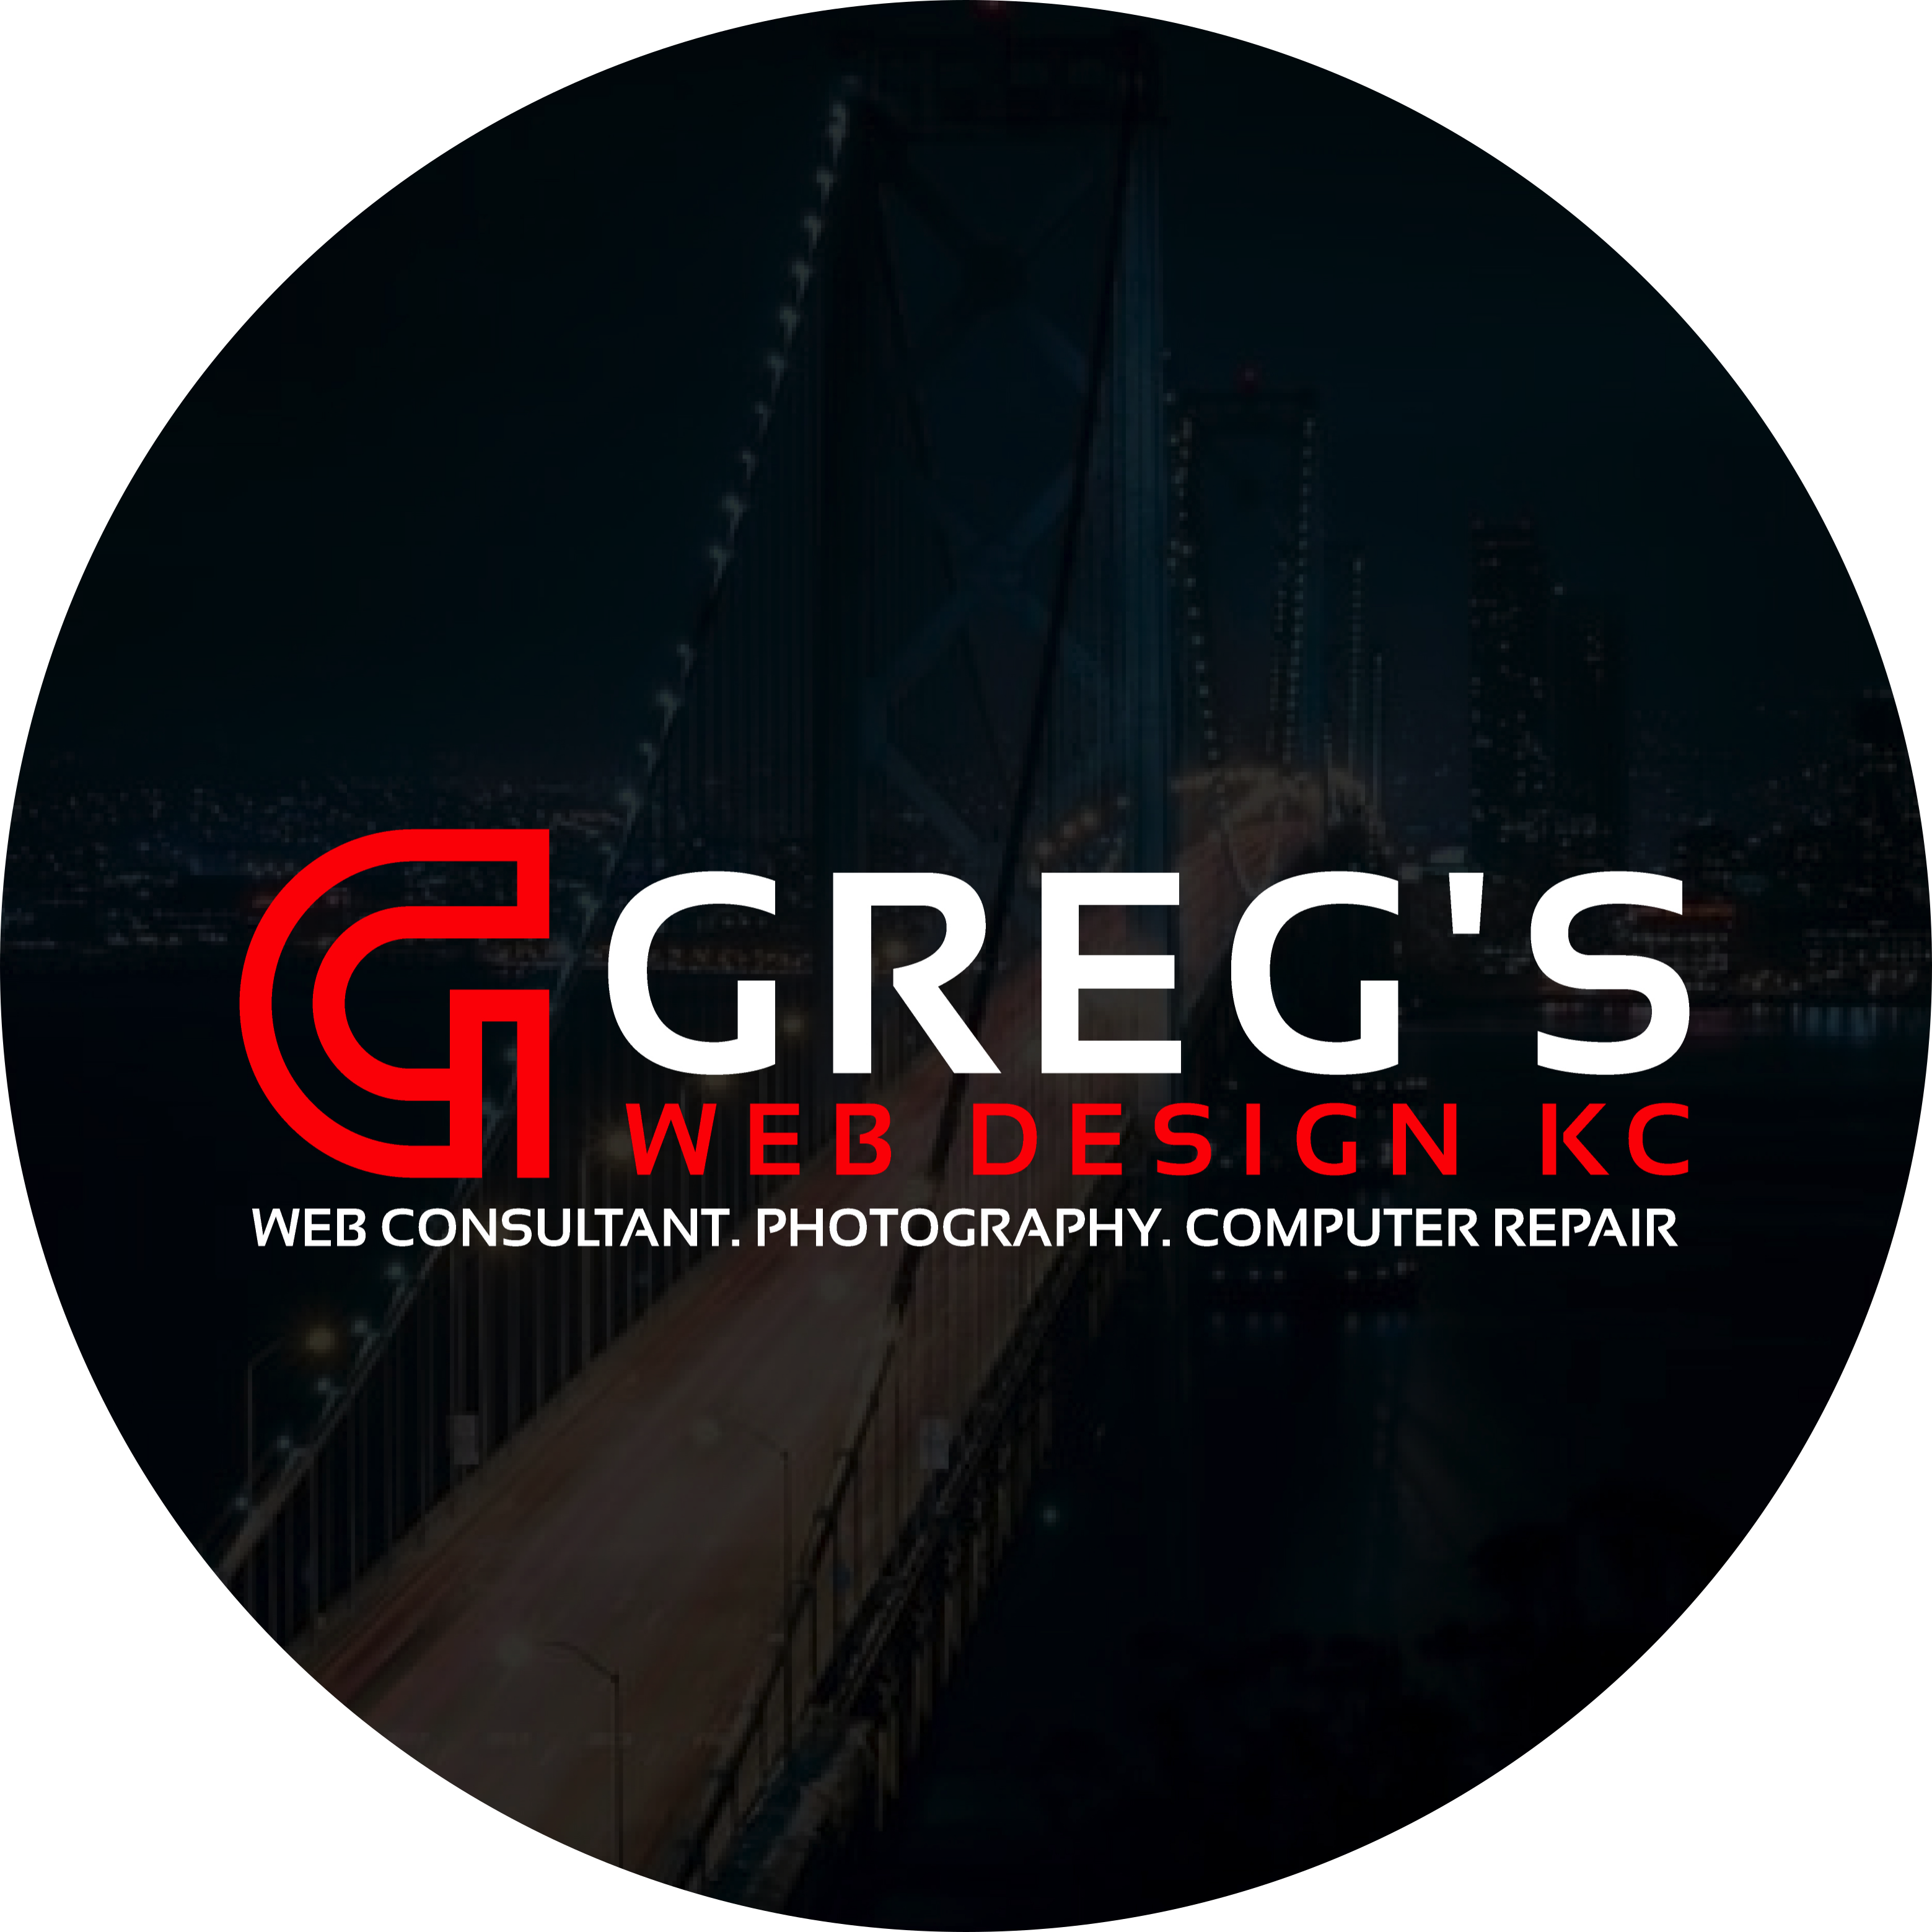 Greg's Webdesign